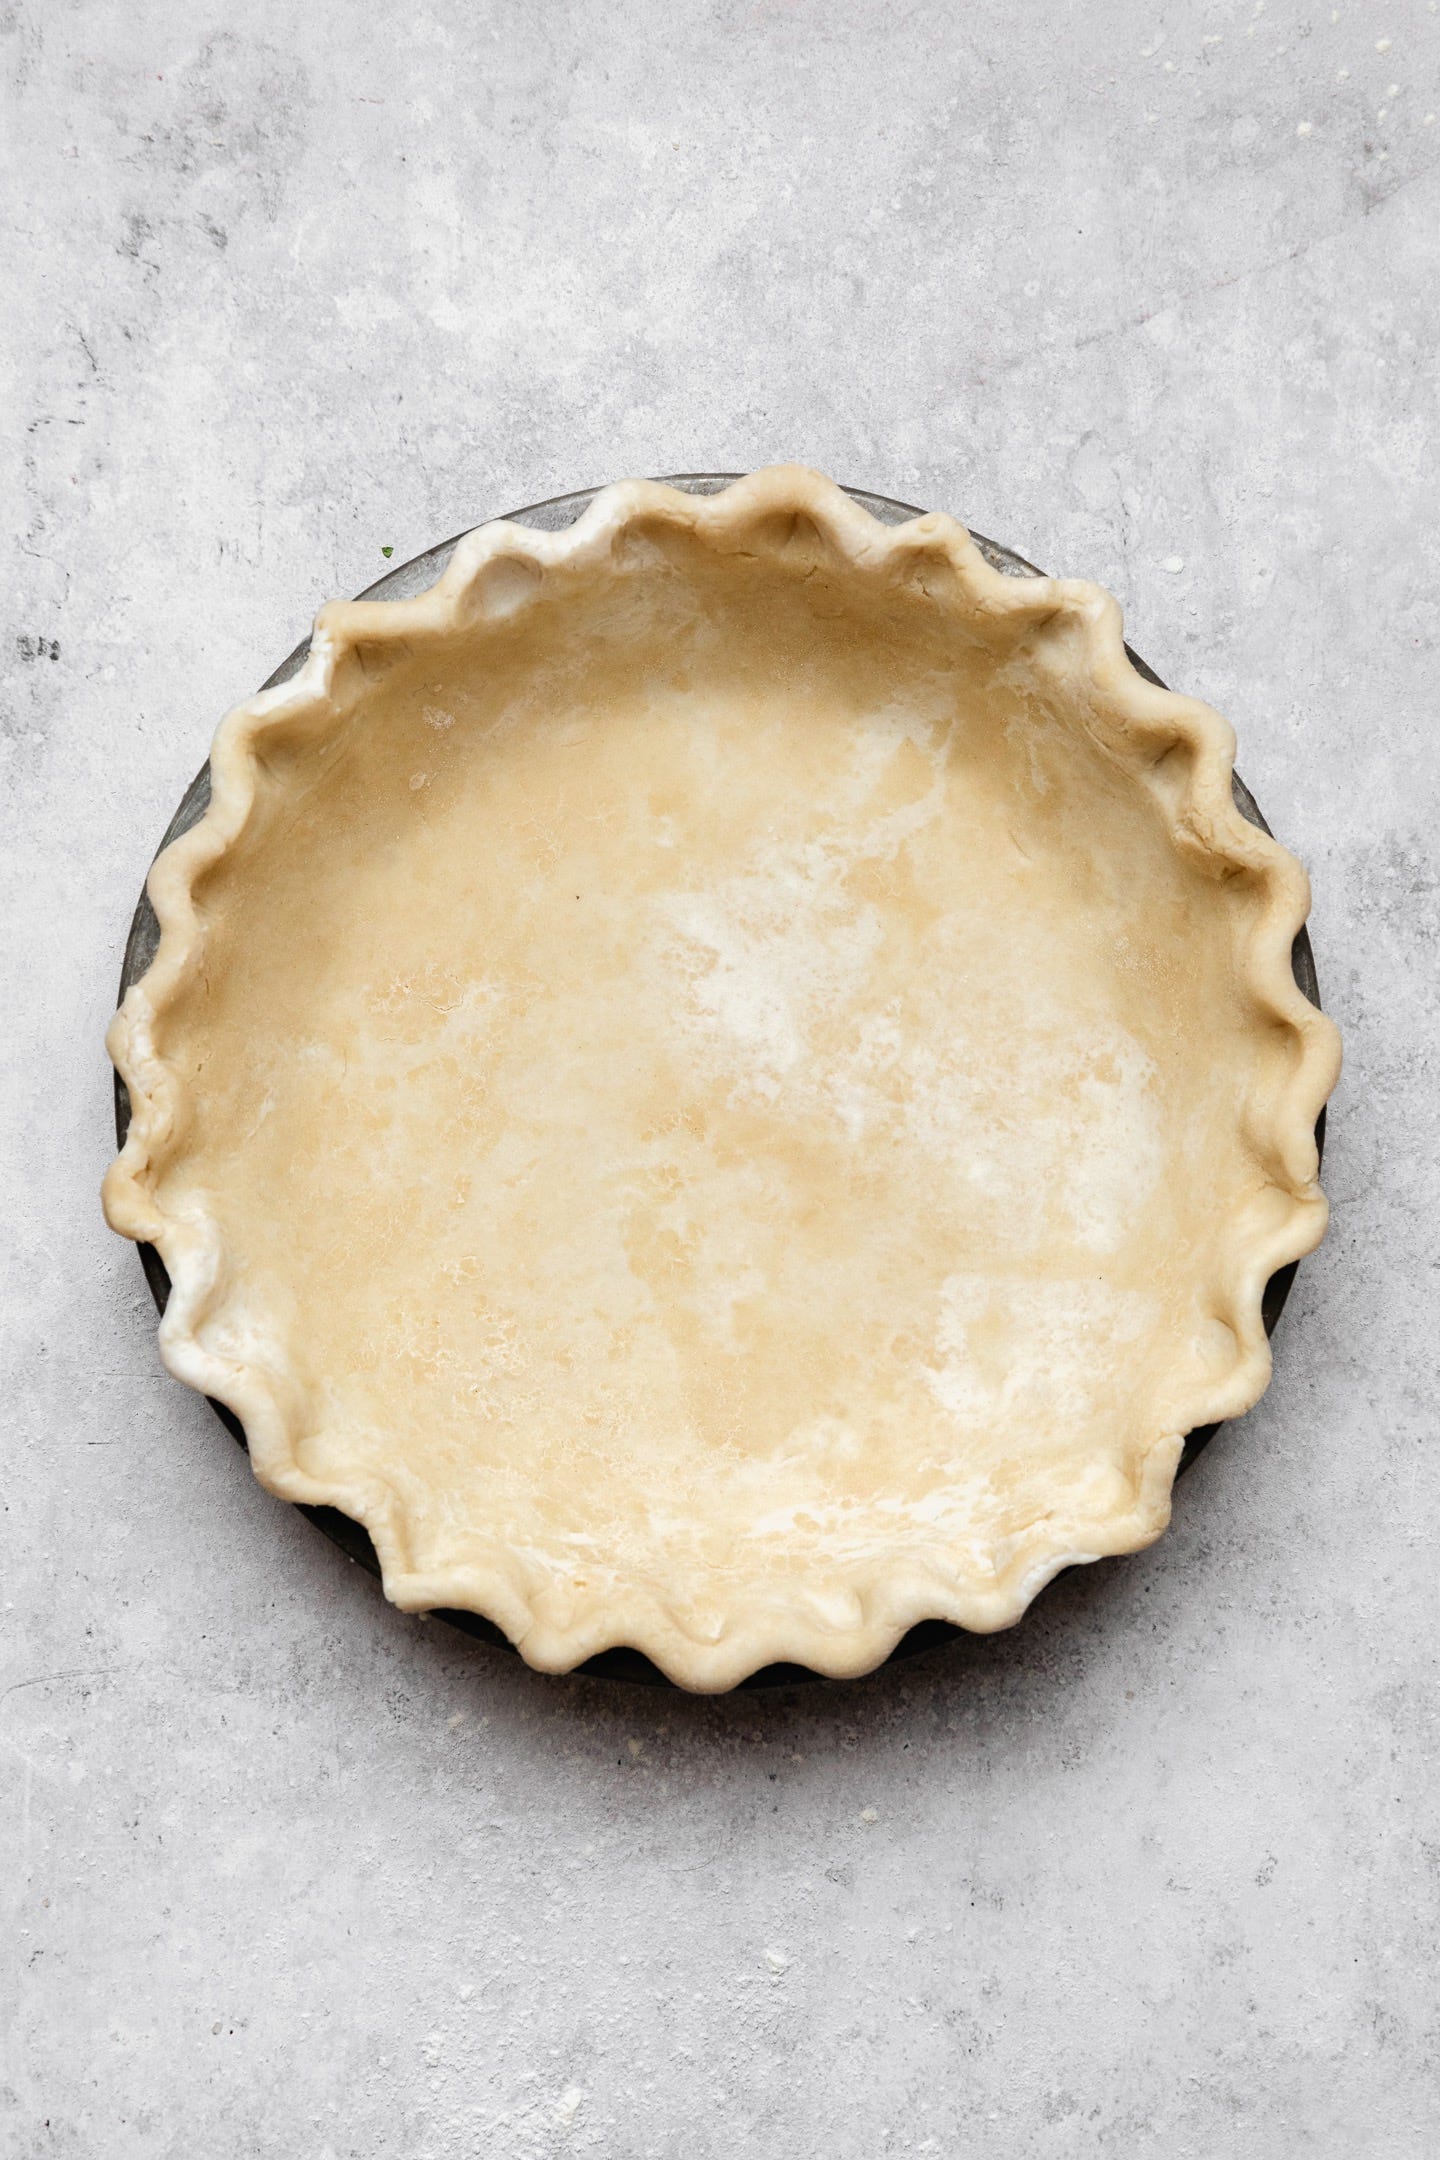 Pâte Brisée - A Classic French Pie Crust Recipe